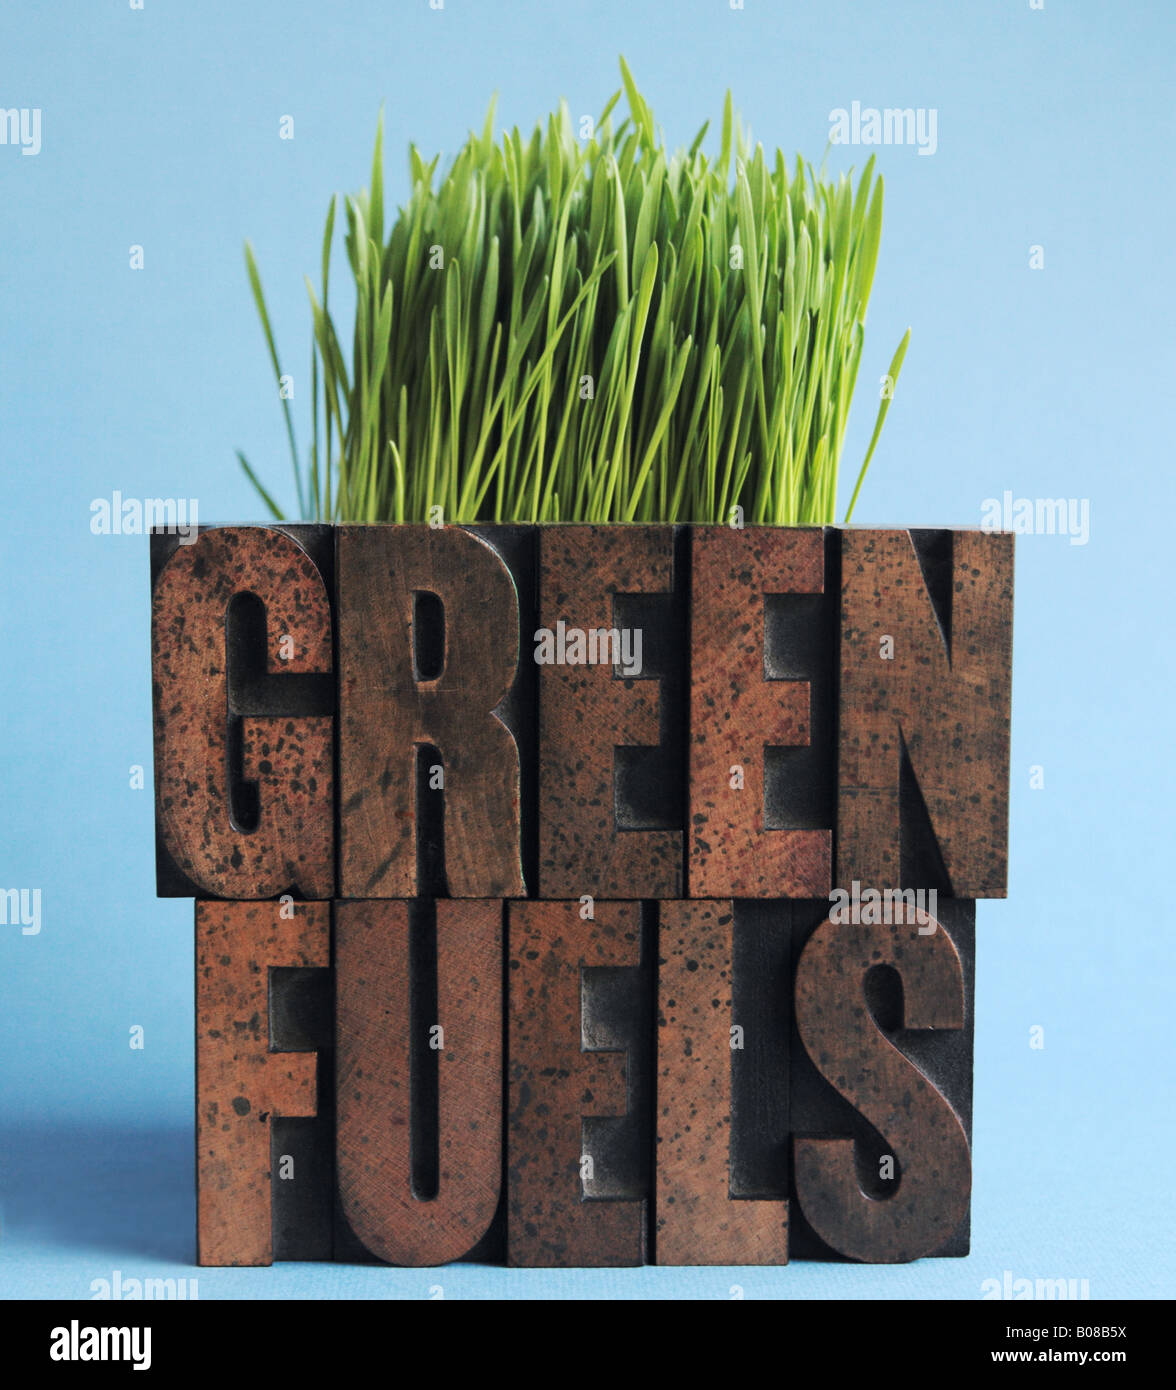 die Worte "Grüne Kraftstoffe" vor Weizengras Stockfoto